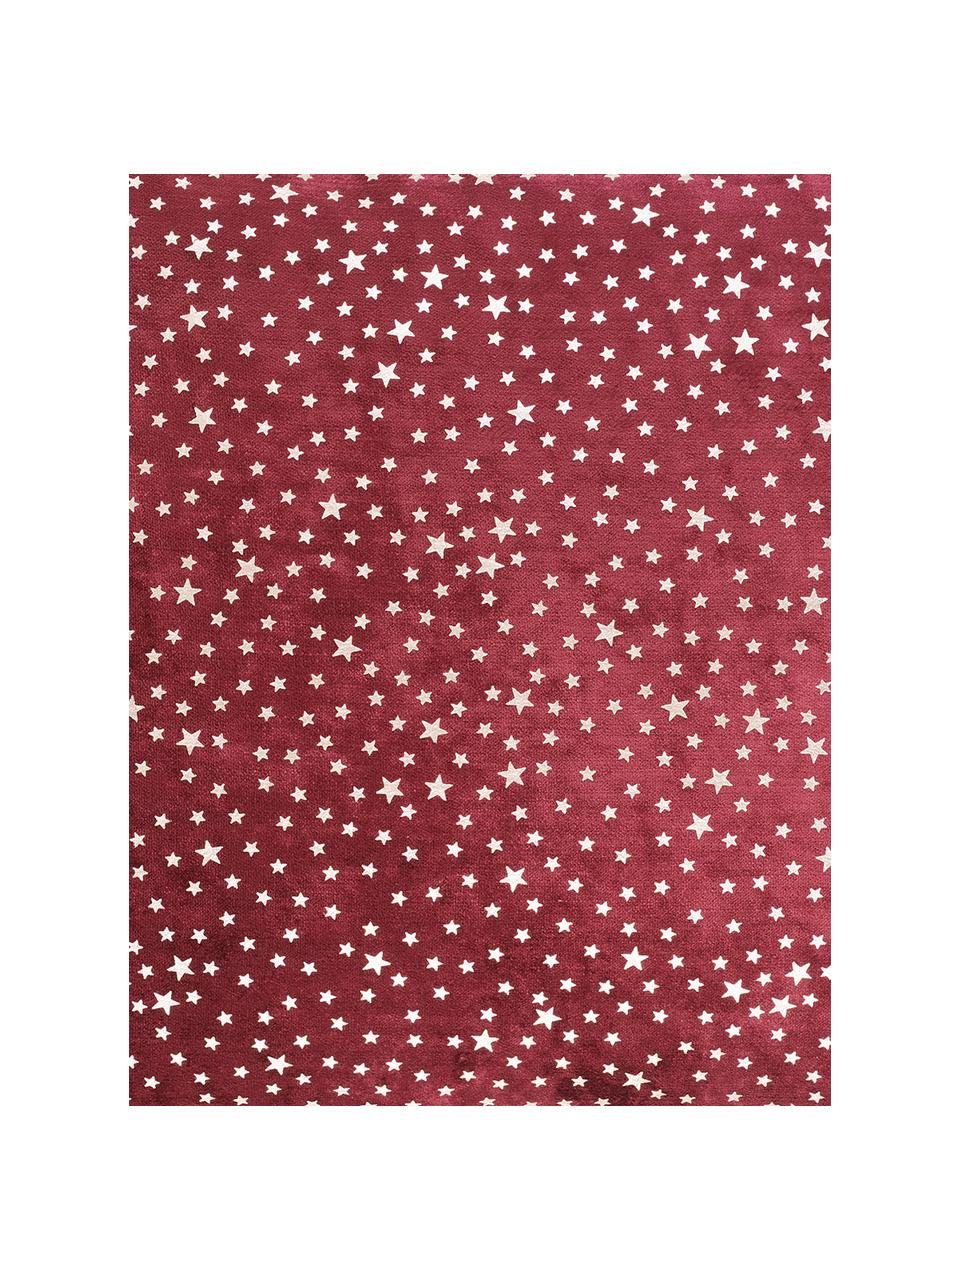 Fluwelen kussenhoes Estrella met goudkleurig glanzende sterren, Bovenzijde: polyester fluweel, Onderzijde: polyester, Marsala rood, 40 x 40 cm